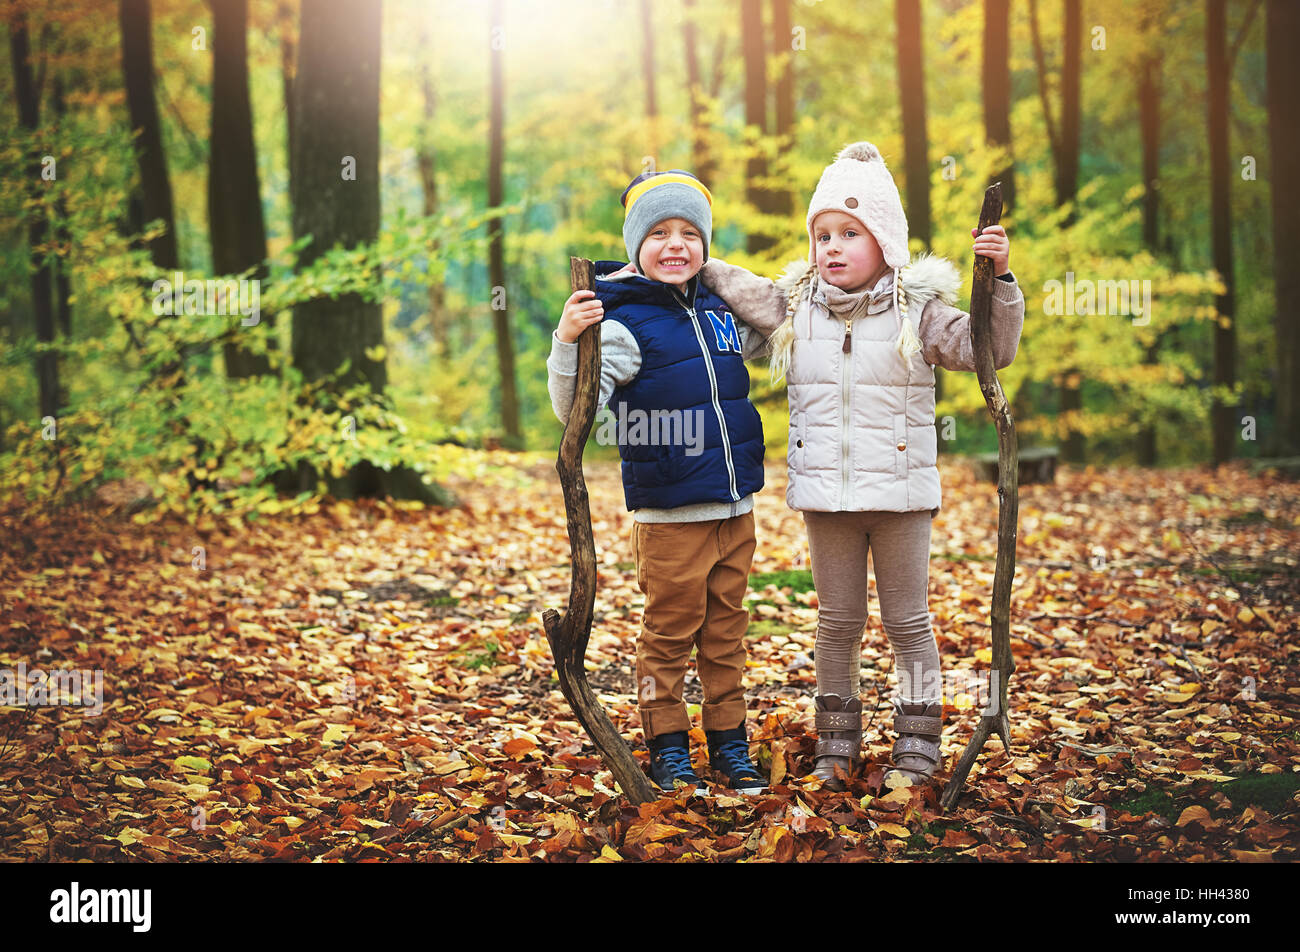 Contenti i bambini in posa con filiali in foresta. All'aperto orizzontale shot Foto Stock